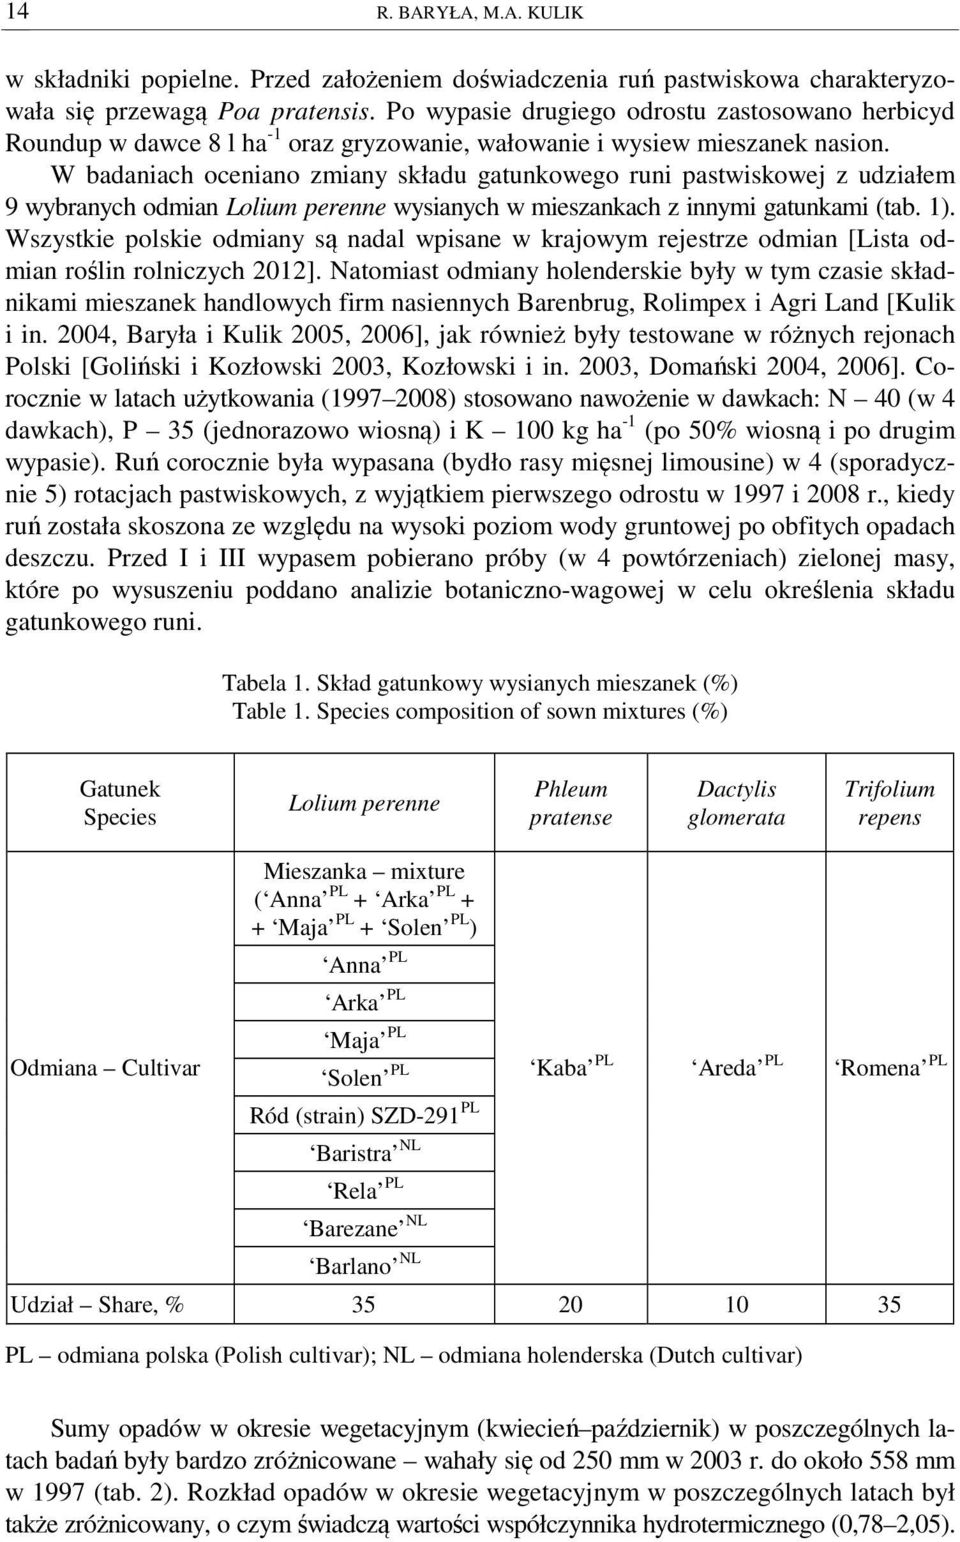 W badaniach oceniano zmiany składu gatunkowego runi pastwiskowej z udziałem 9 wybranych odmian Lolium perenne wysianych w mieszankach z innymi gatunkami (tab. 1).